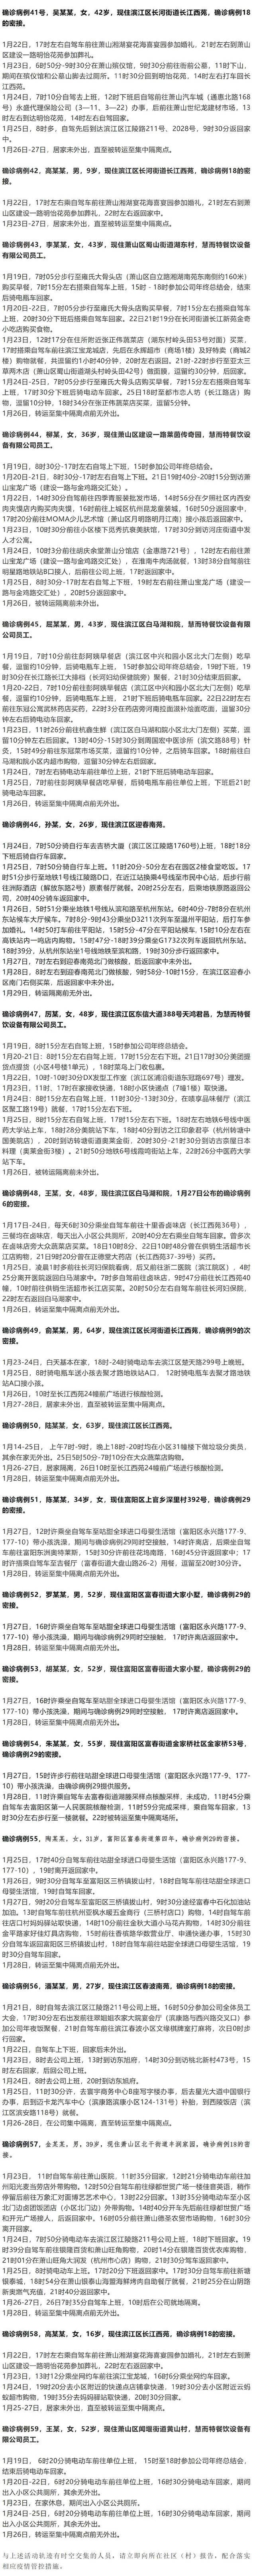 杭州昨日新增19例新冠肺炎确诊病例